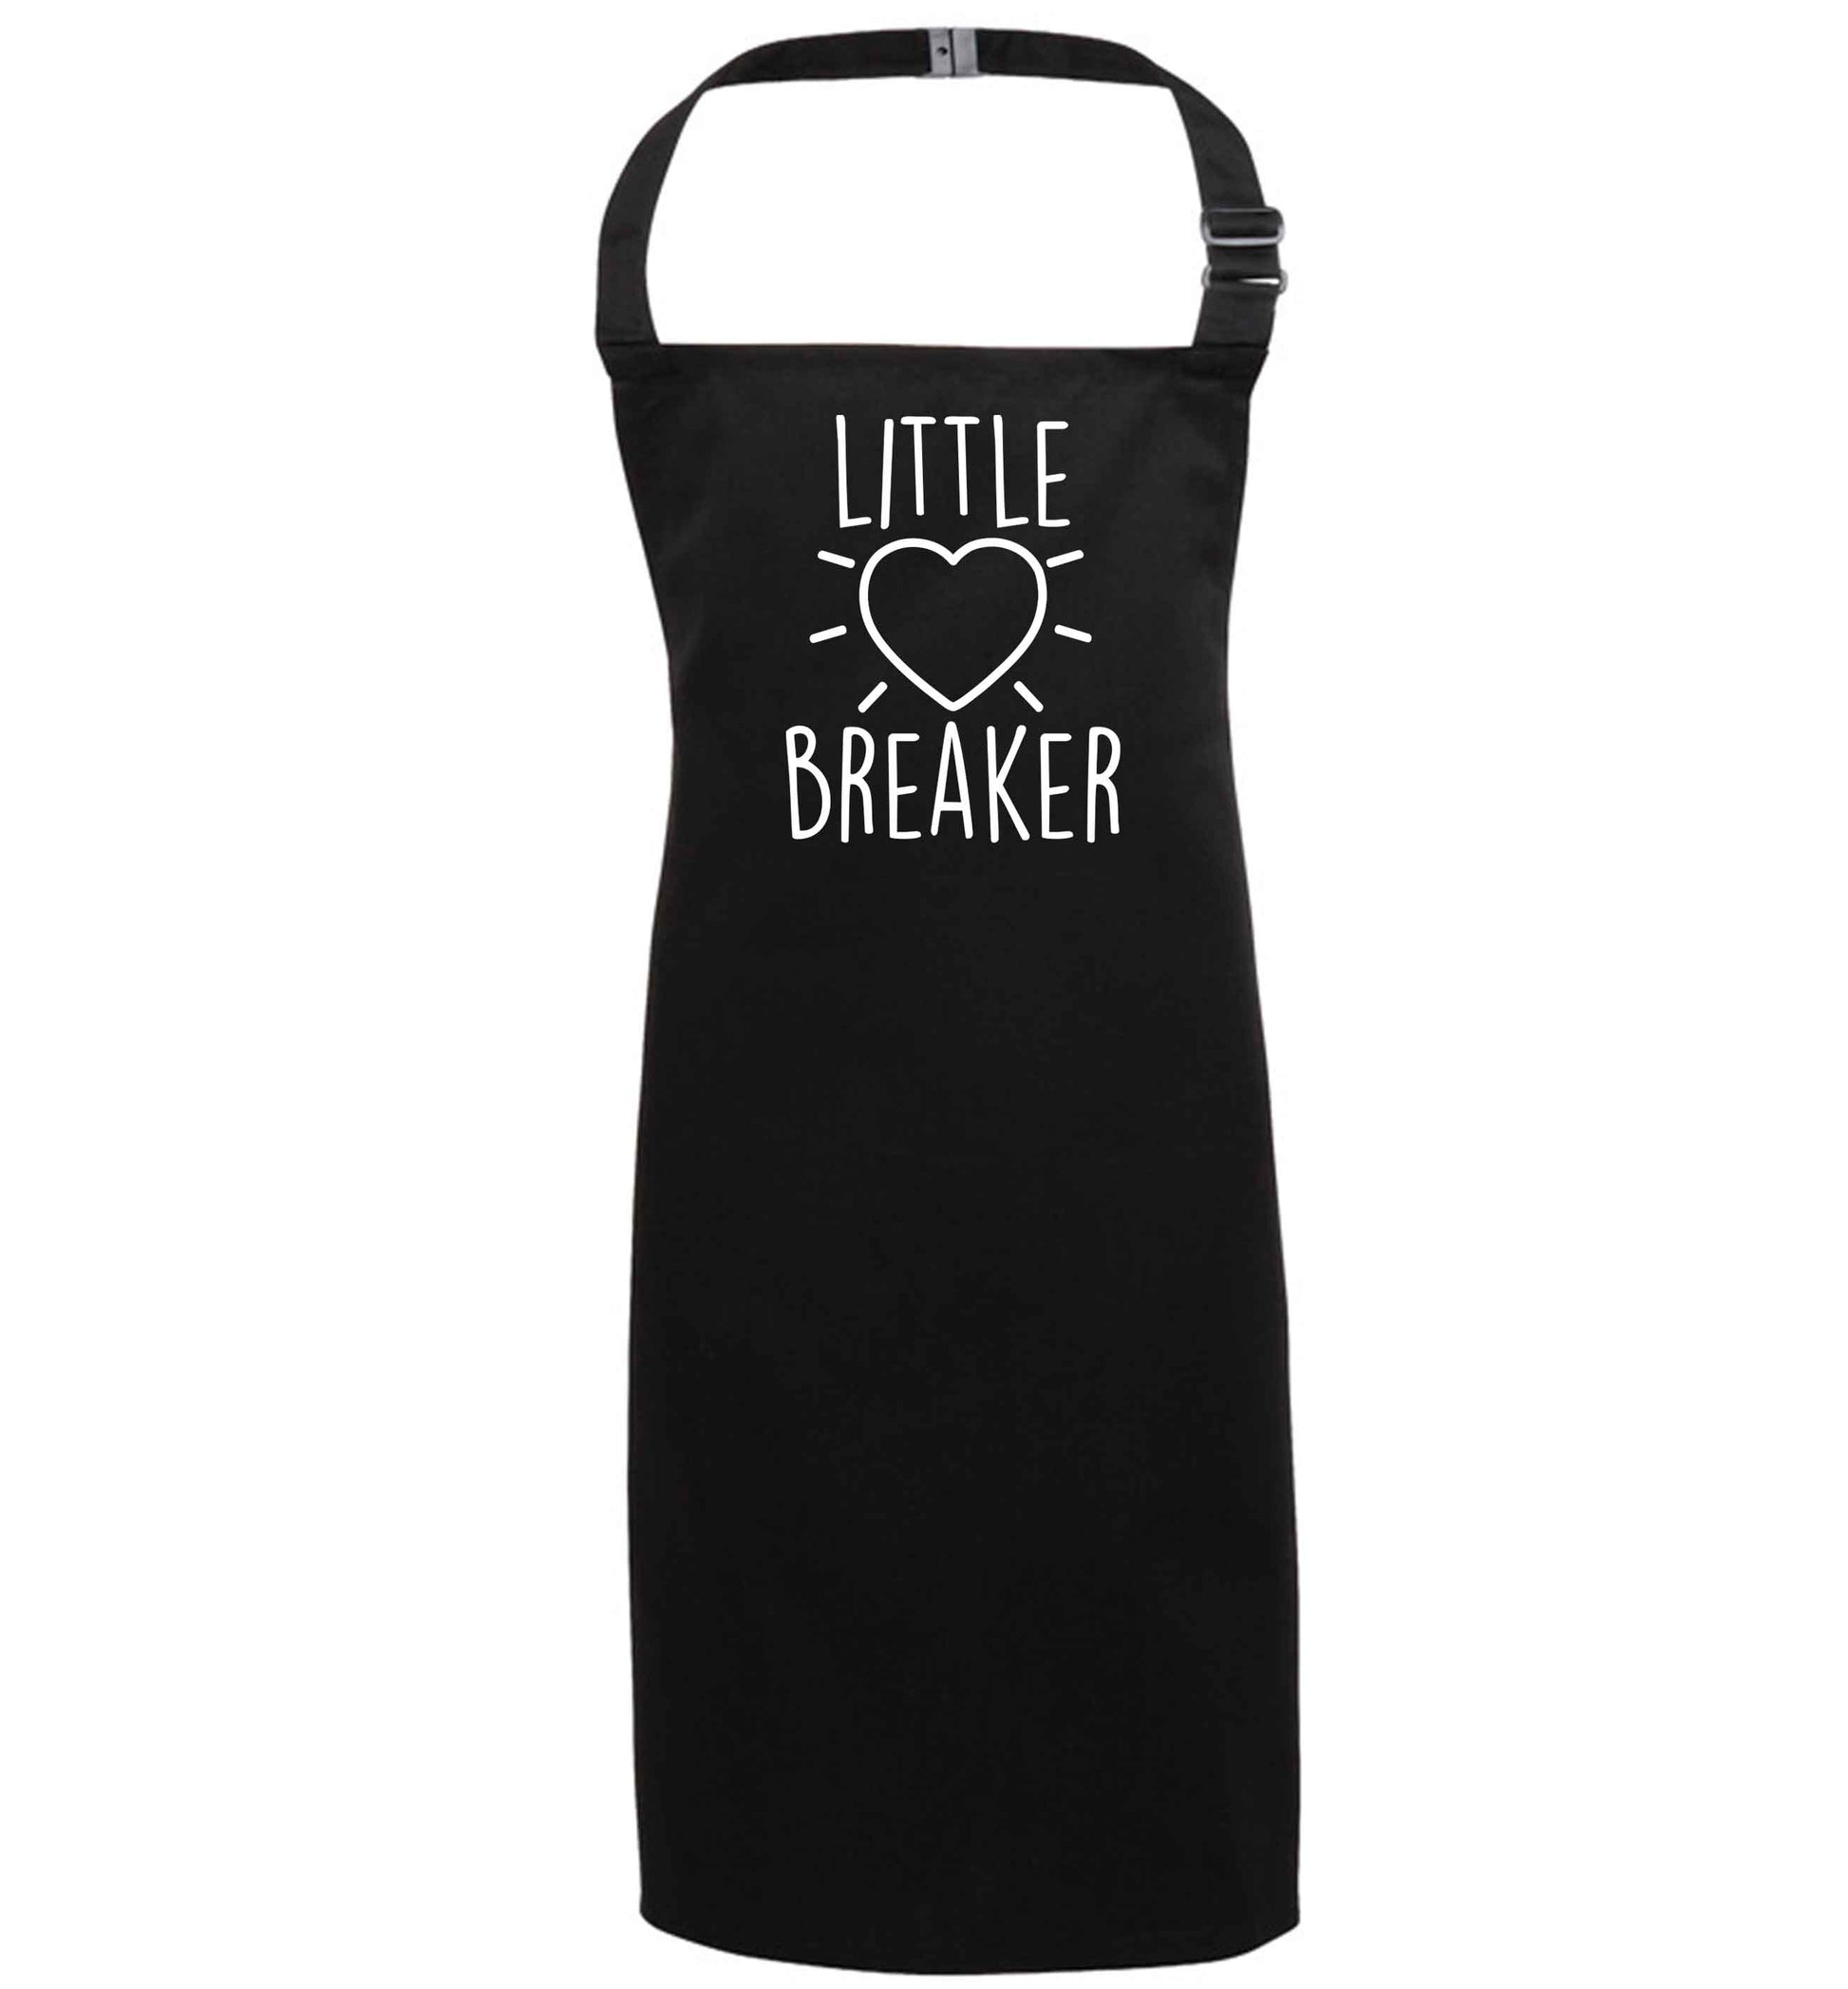 Little heartbreaker black apron 7-10 years